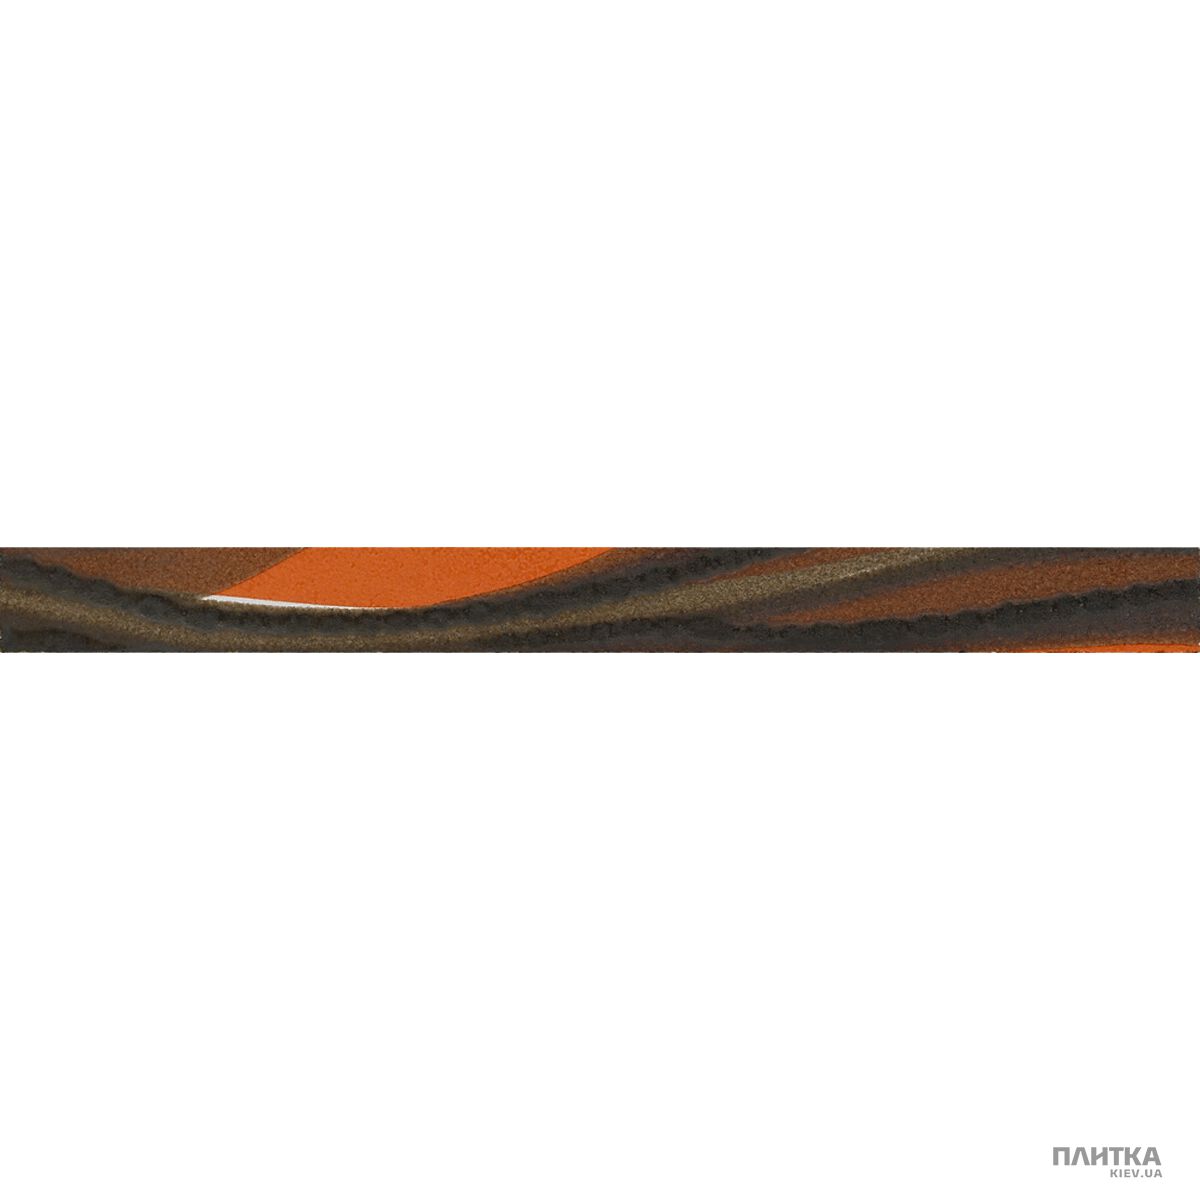 Плитка Imola Nuvole L.VENTO O MIX фриз -Z коричневый,оранжевый